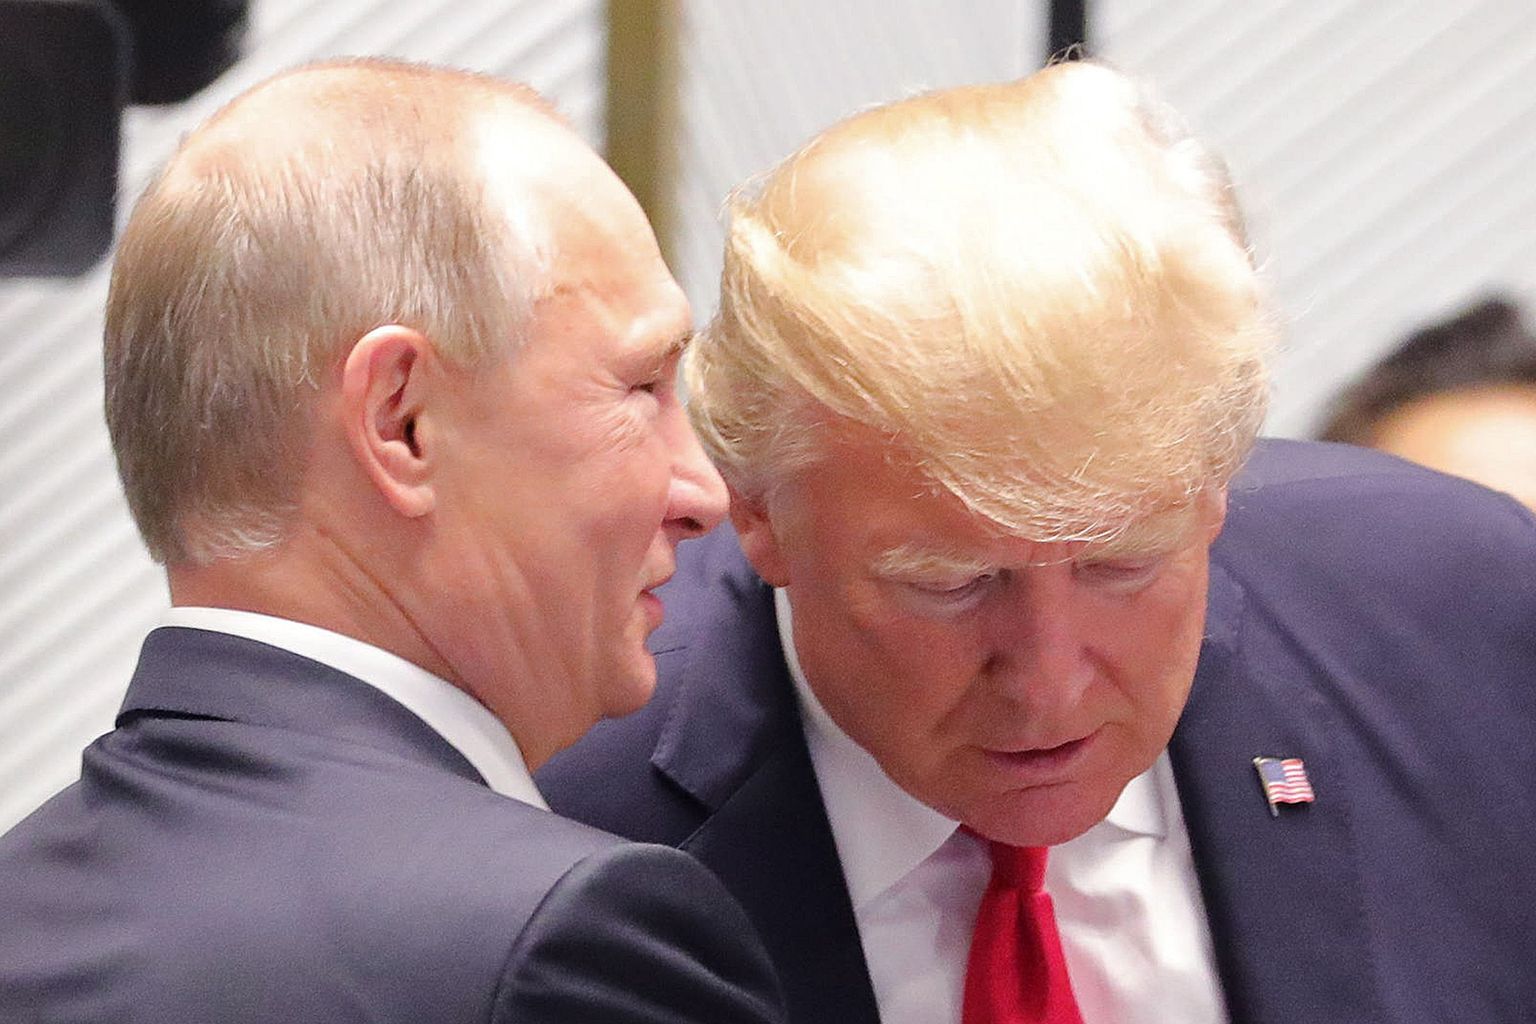 Venemaa president Vladimir Putin (vasakul) ja Ameerika Ühendriikide riigipea Donald Trump üleeile Vietnamis Đà Nẵngis Aasia ja Vaikse ookeani Majanduskoostöö (APEC) tippkohtumise ajal.